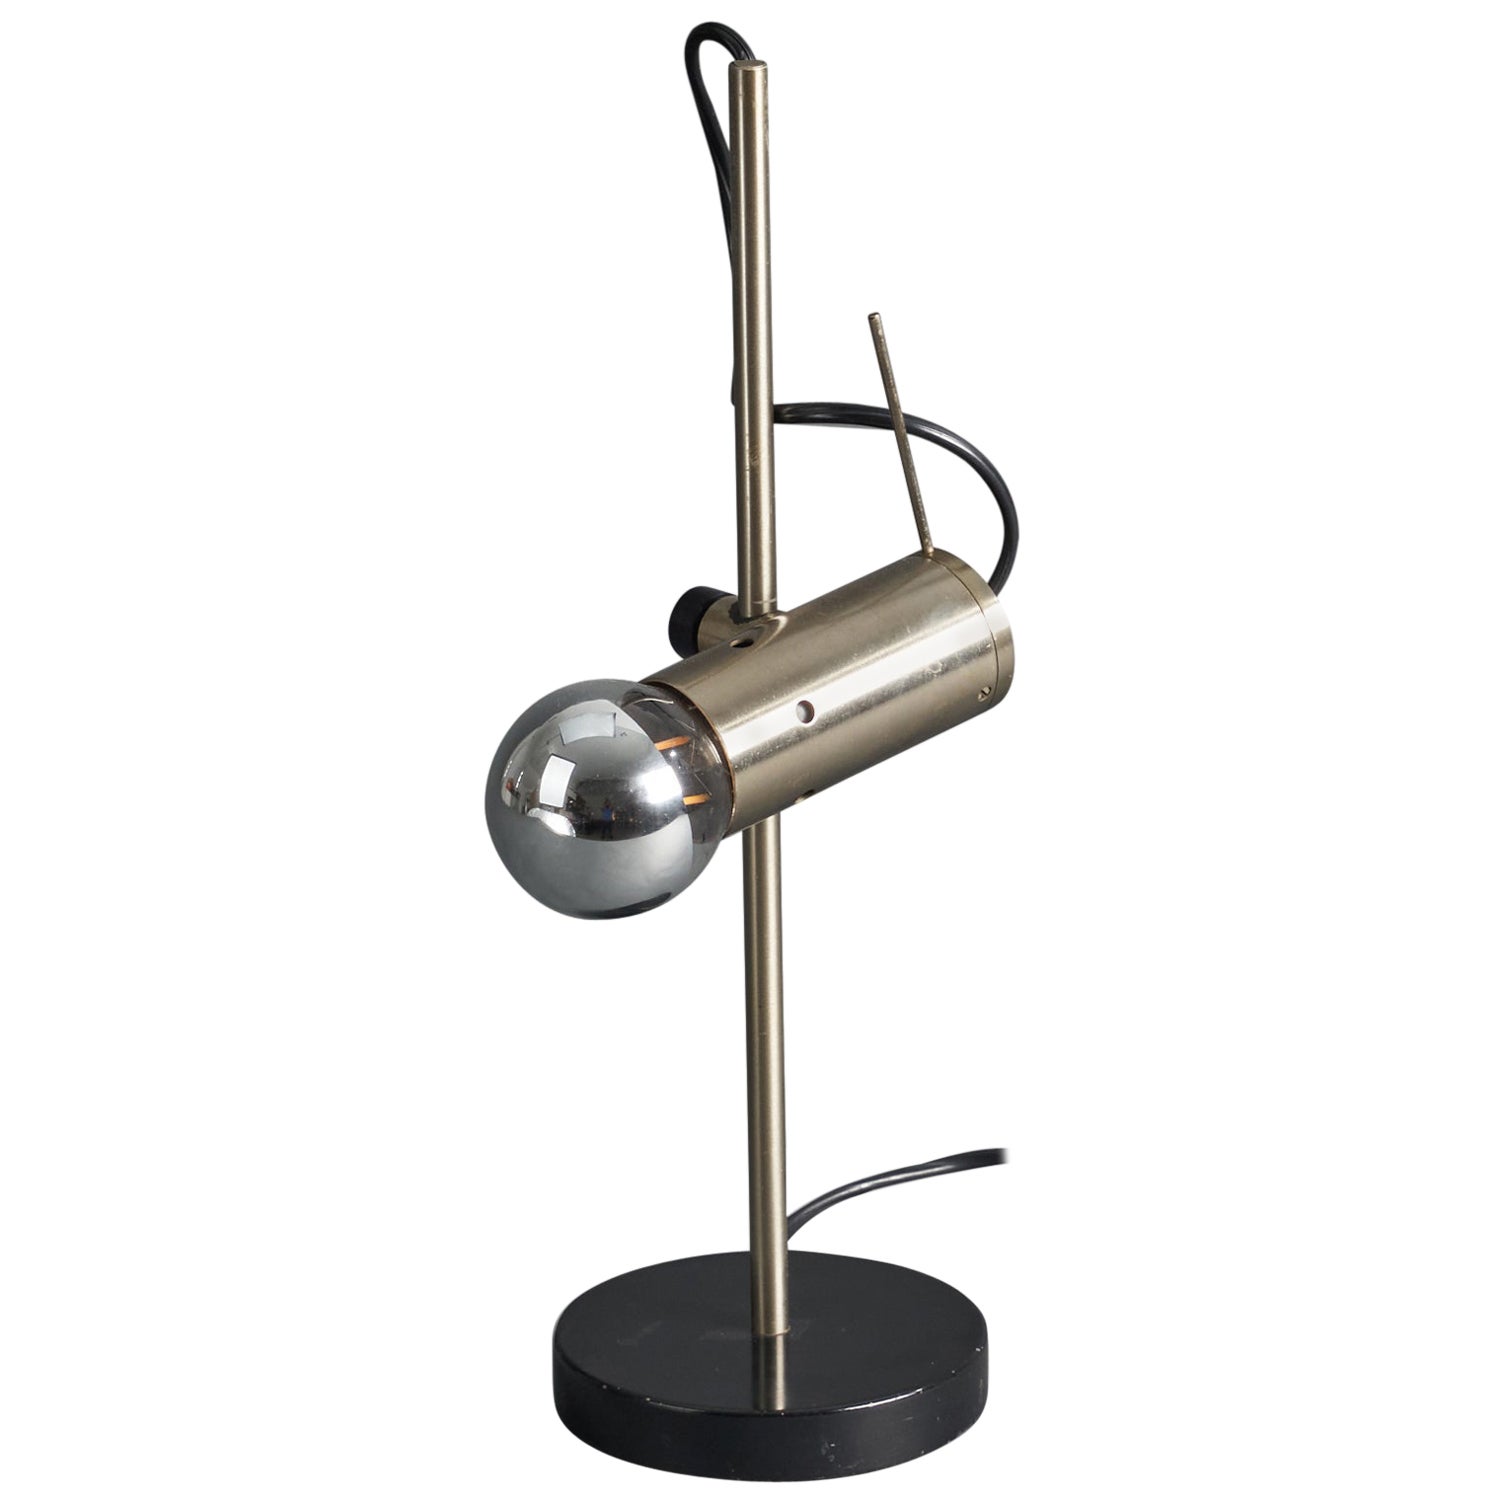 Tito Agnoli, Adjustable Table Lamp, Steel, Metal, Italy, 1953